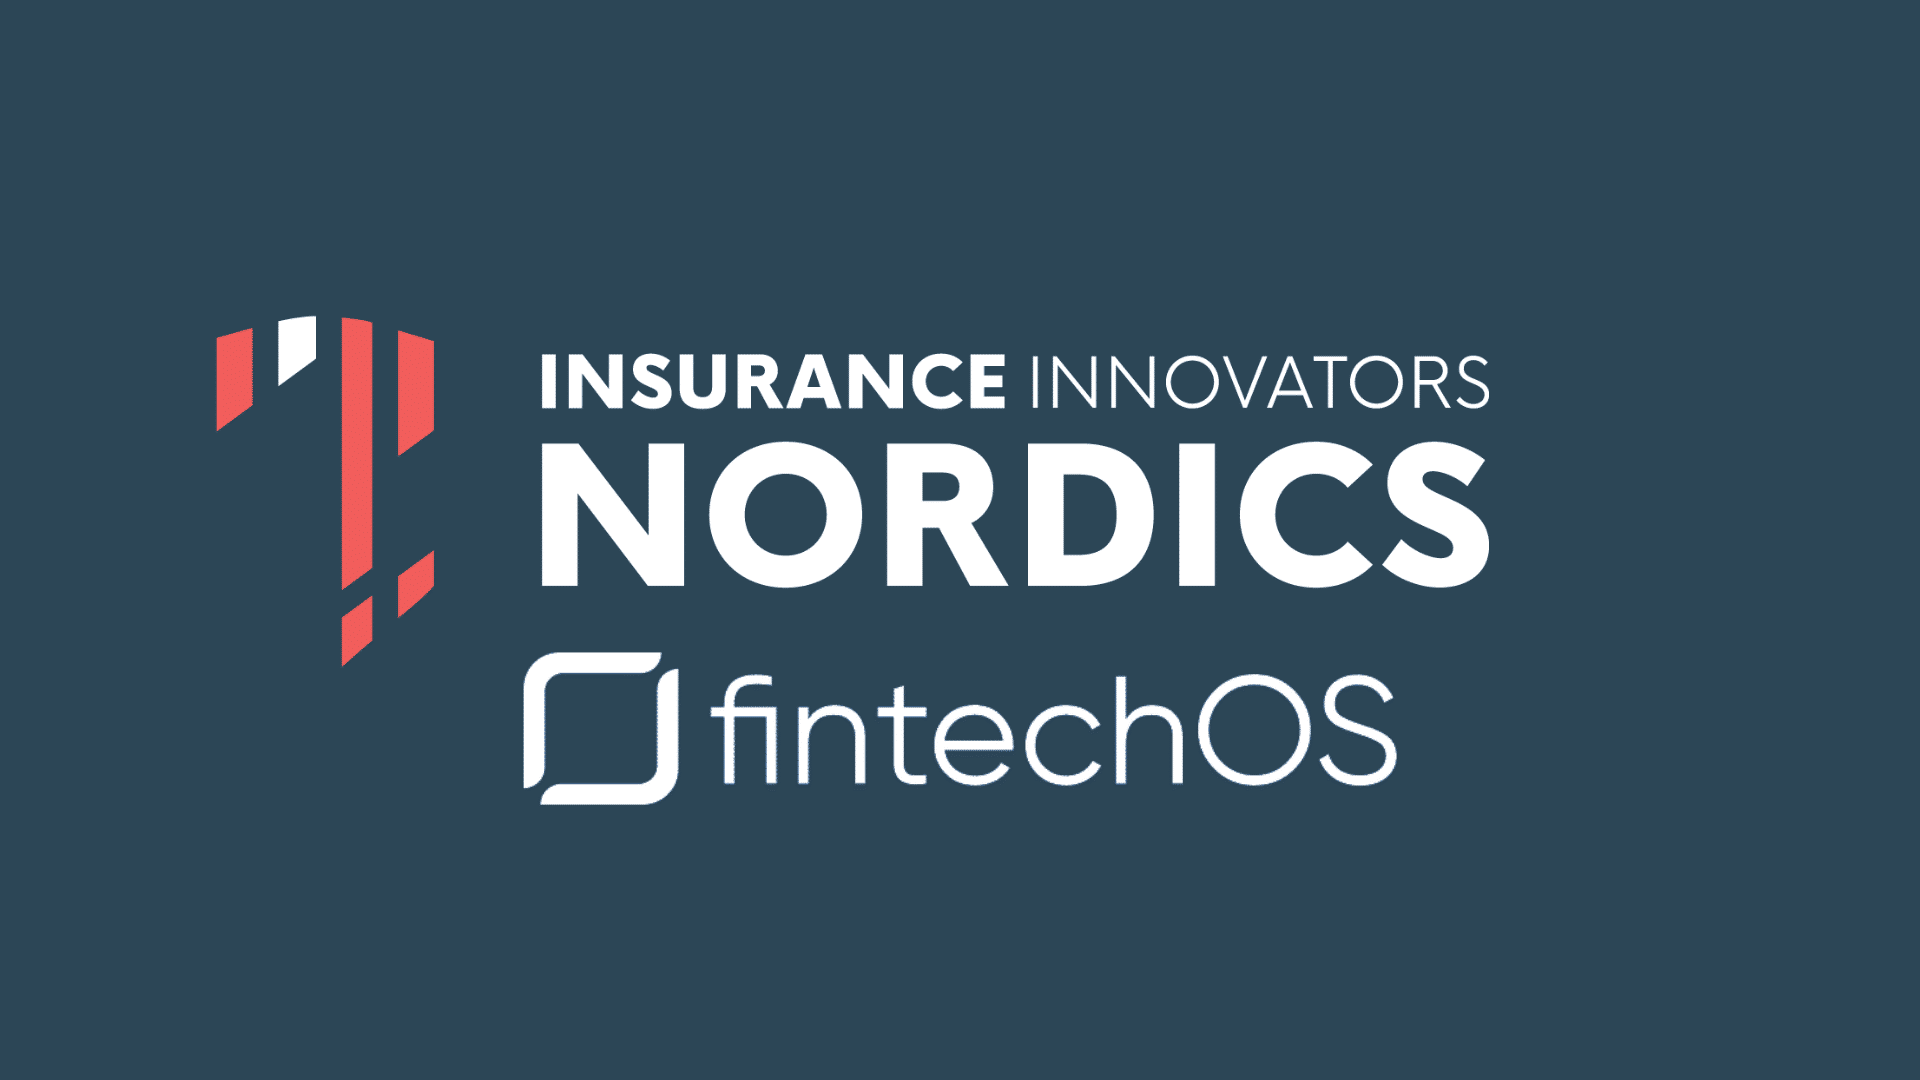 FintechOS at Insurance Innovations Nordics